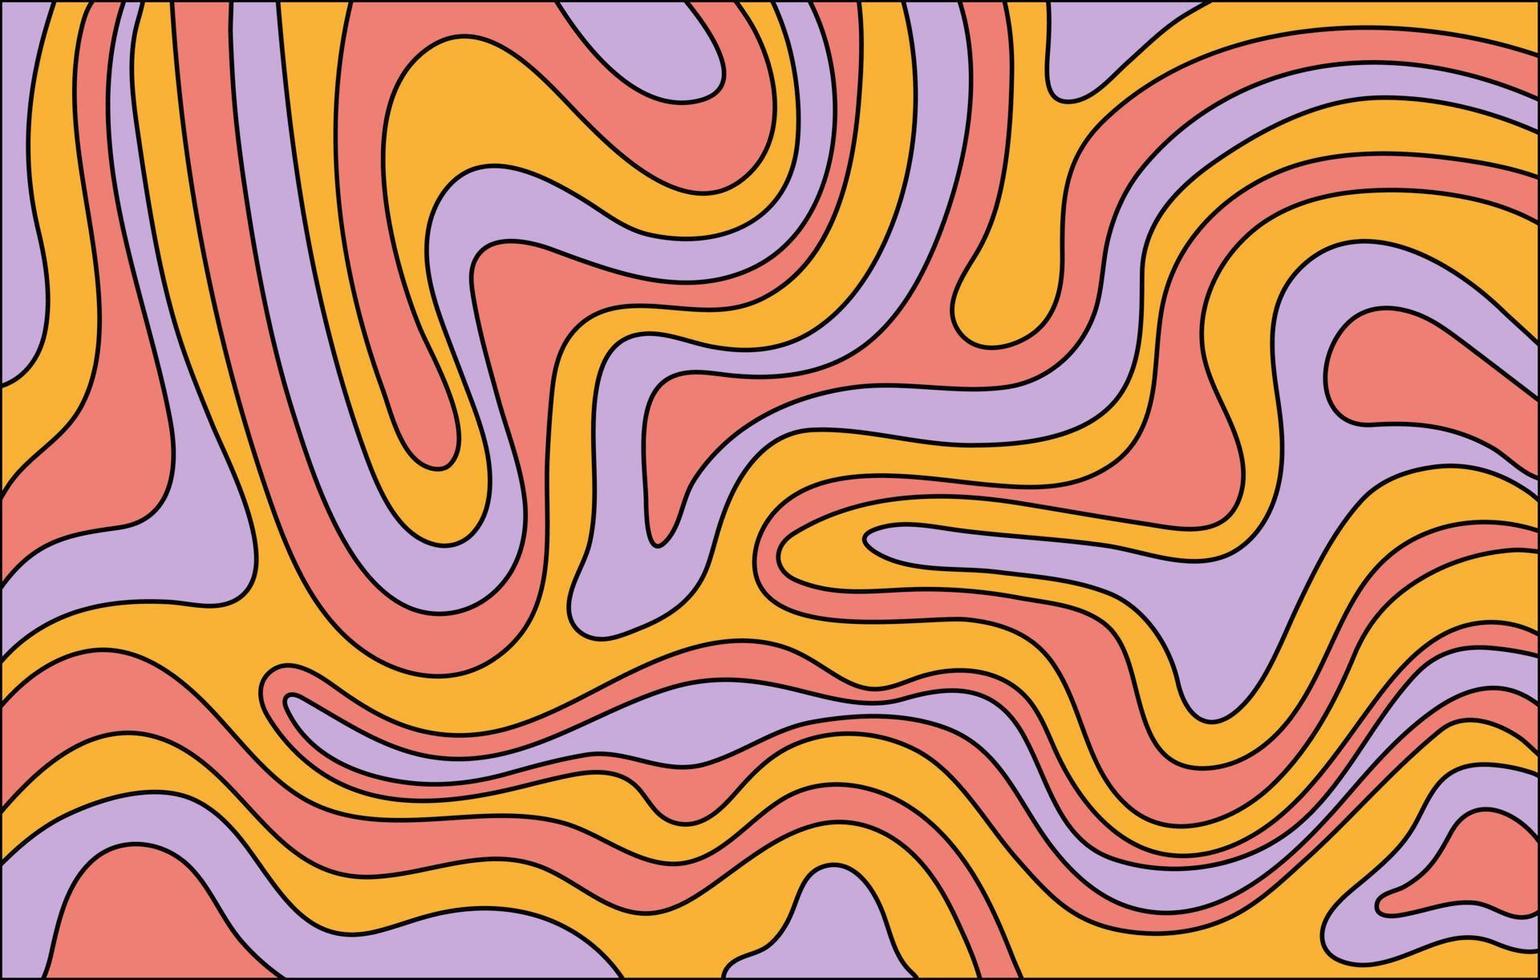 abstrato horizontal com ondas coloridas. ilustração vetorial na moda em estilo retrô dos anos 60, 70. vetor